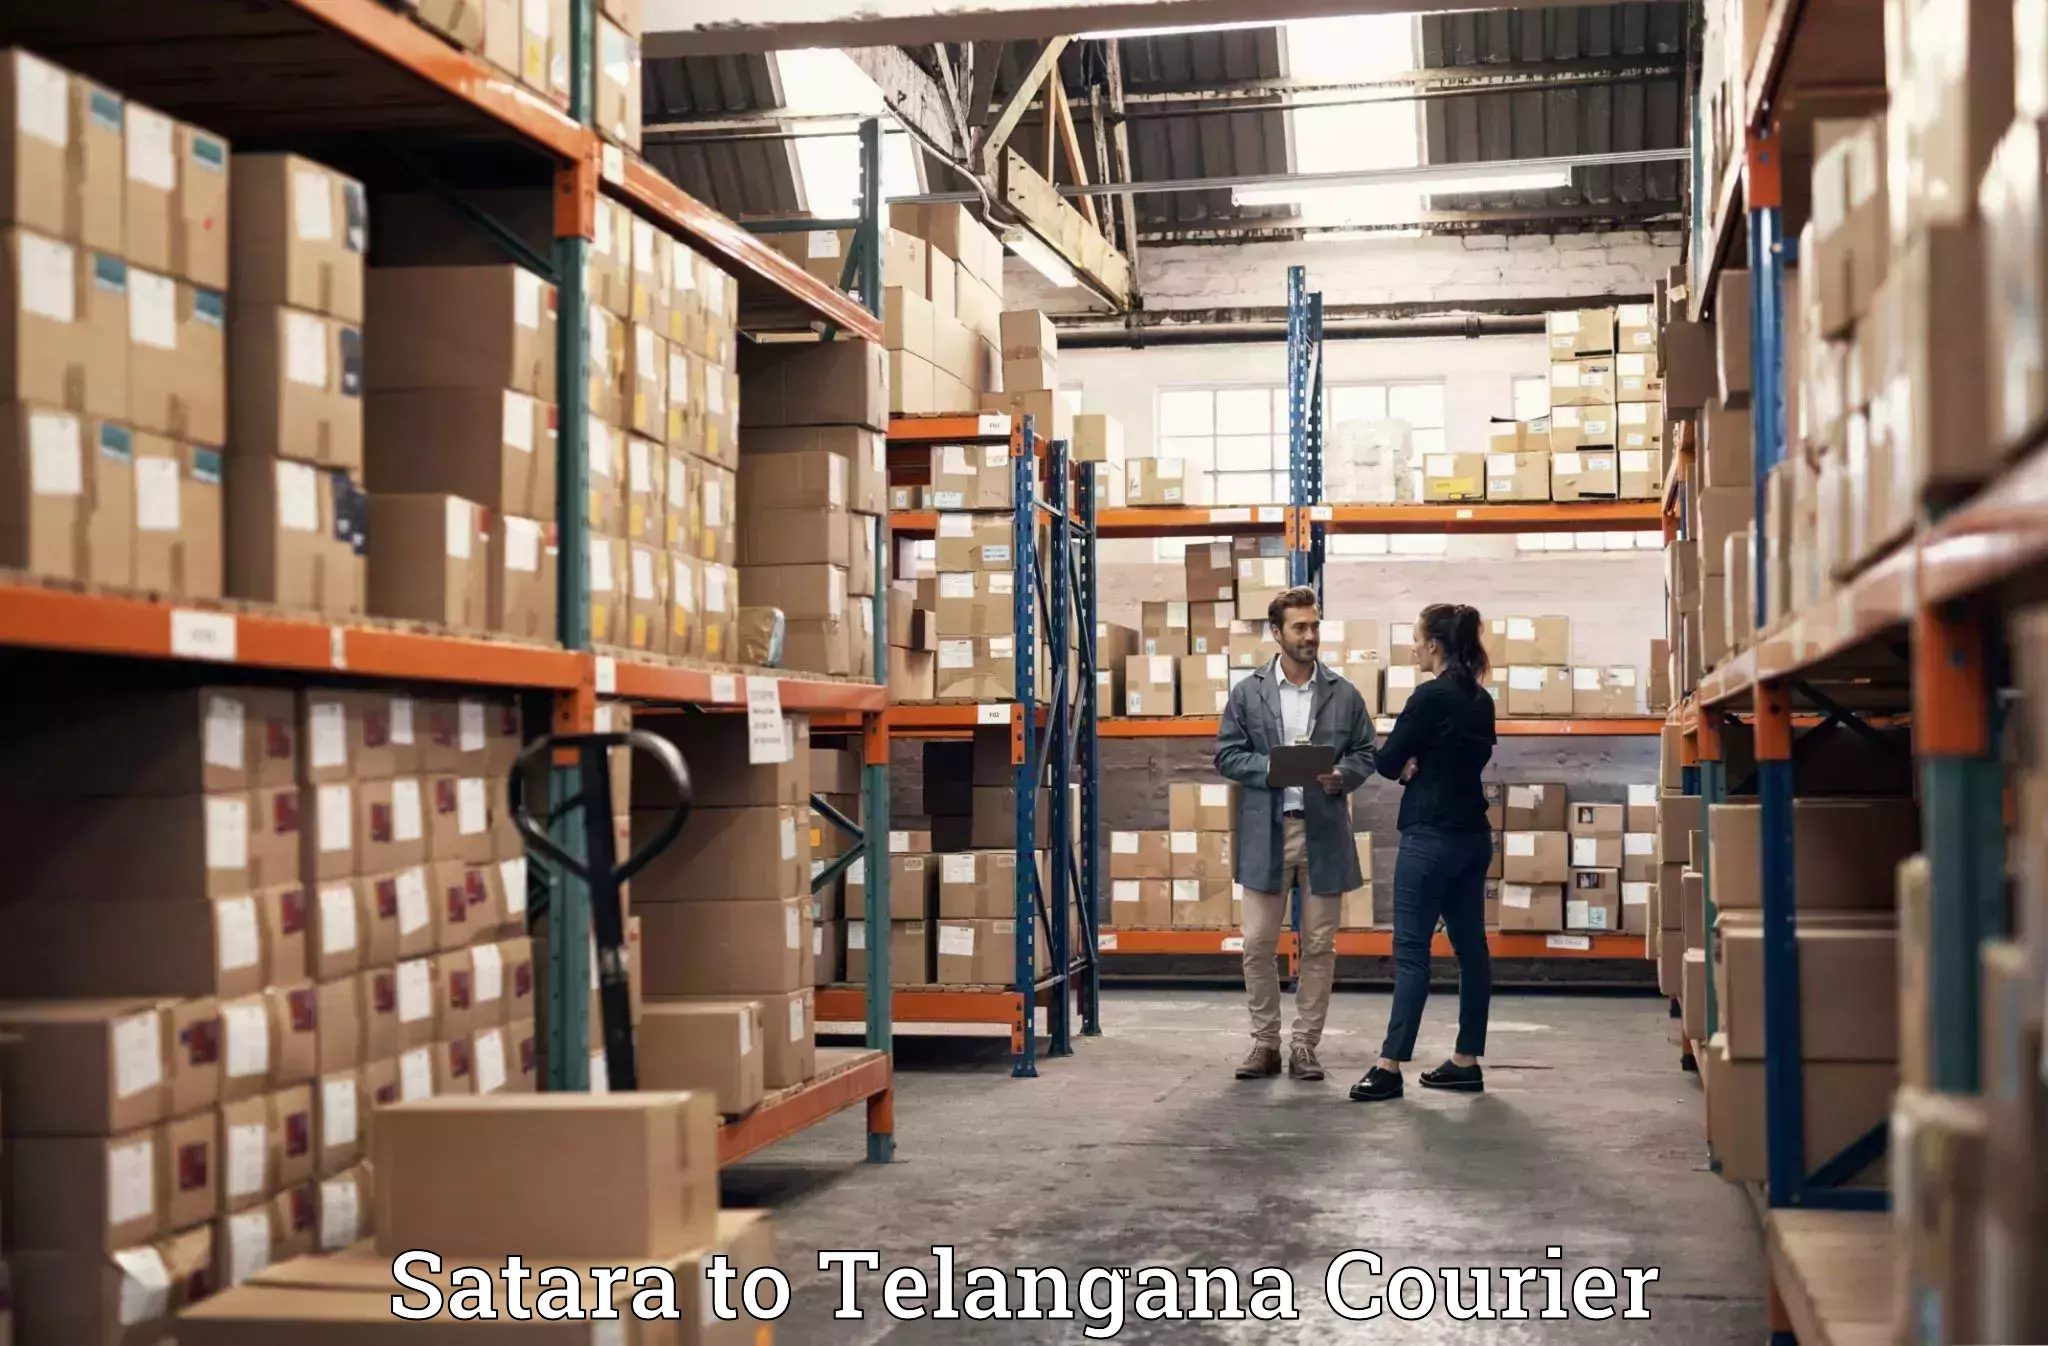 Baggage shipping experience Satara to Telangana